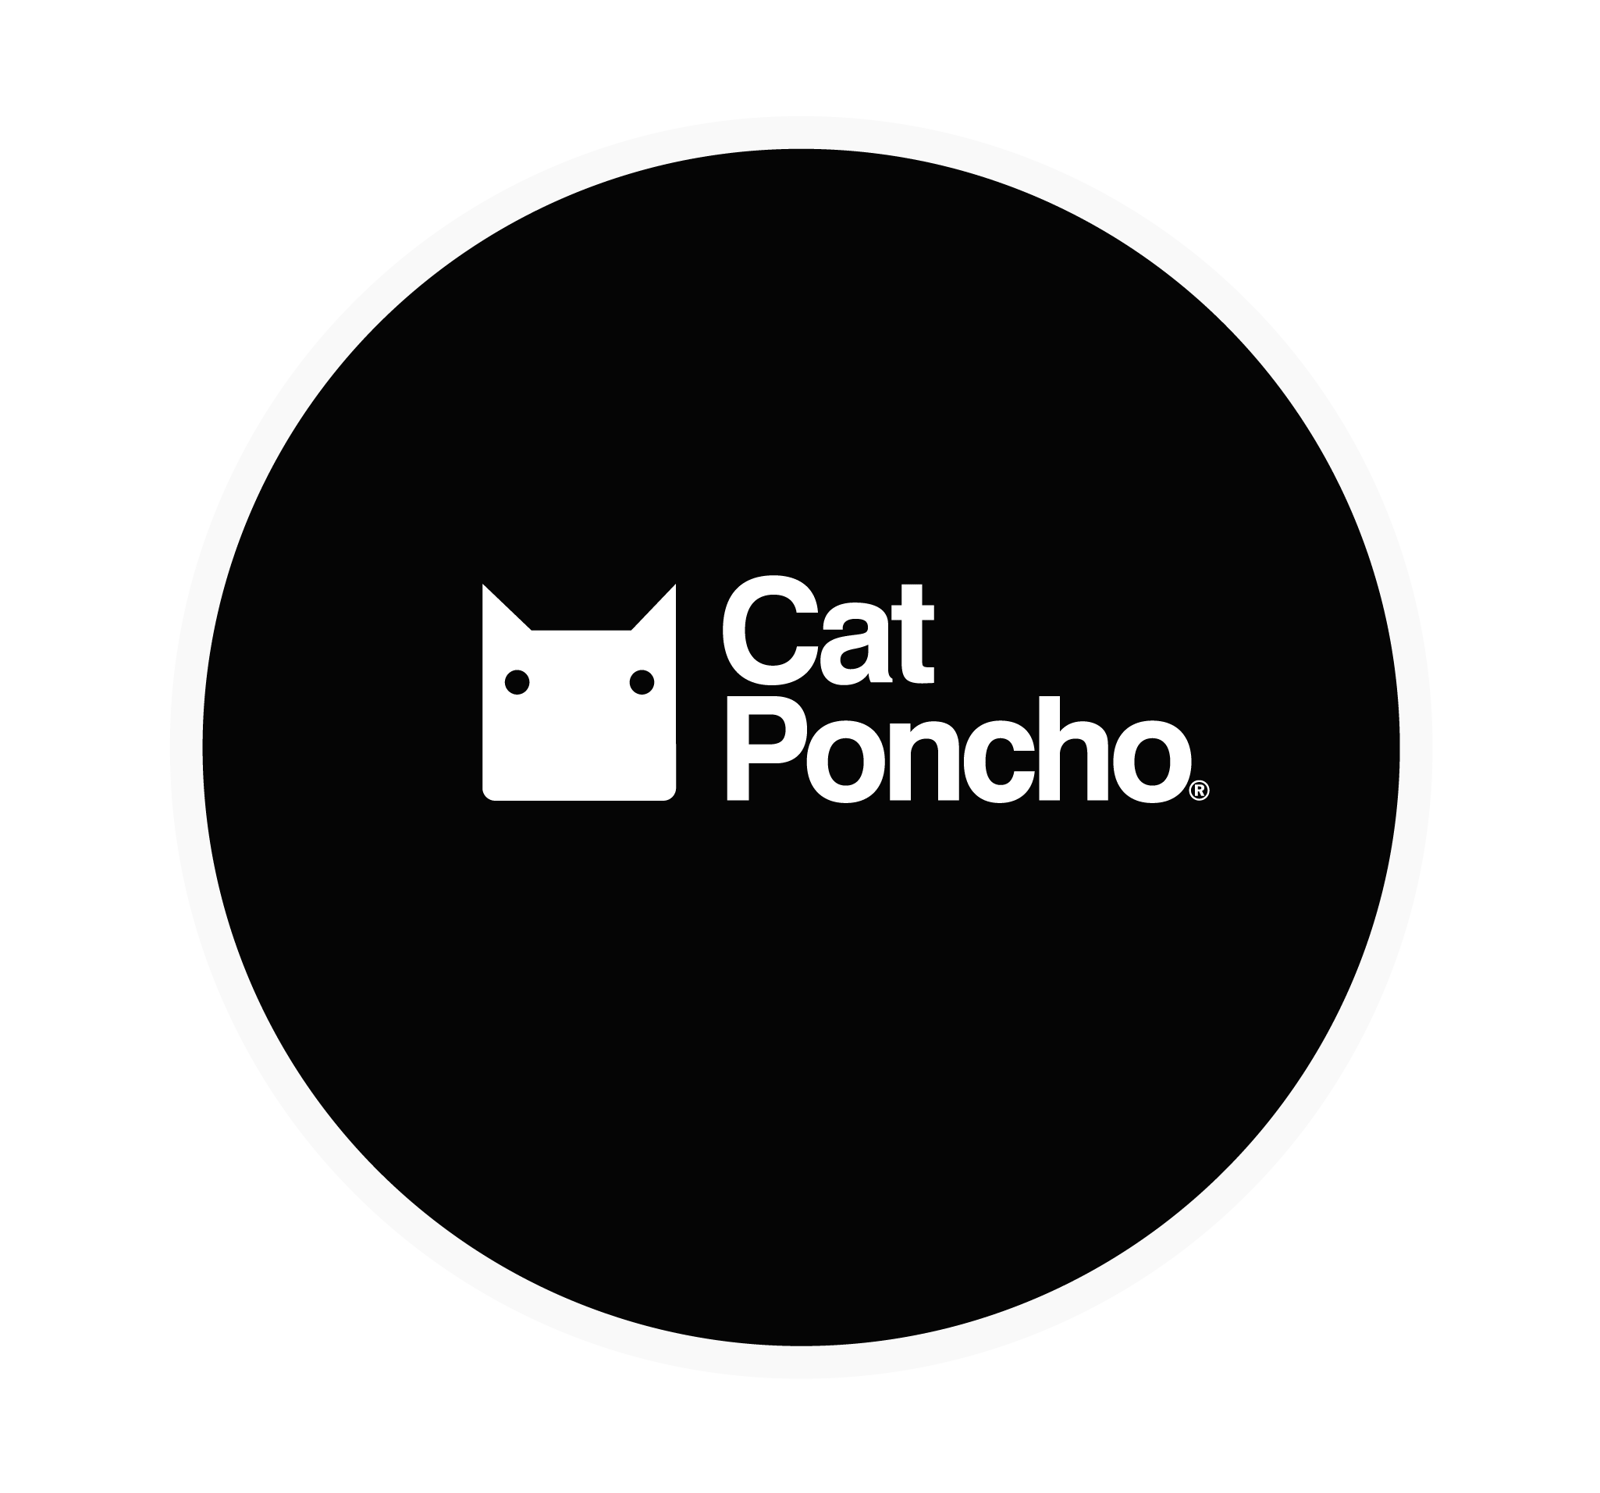 Cat Poncho